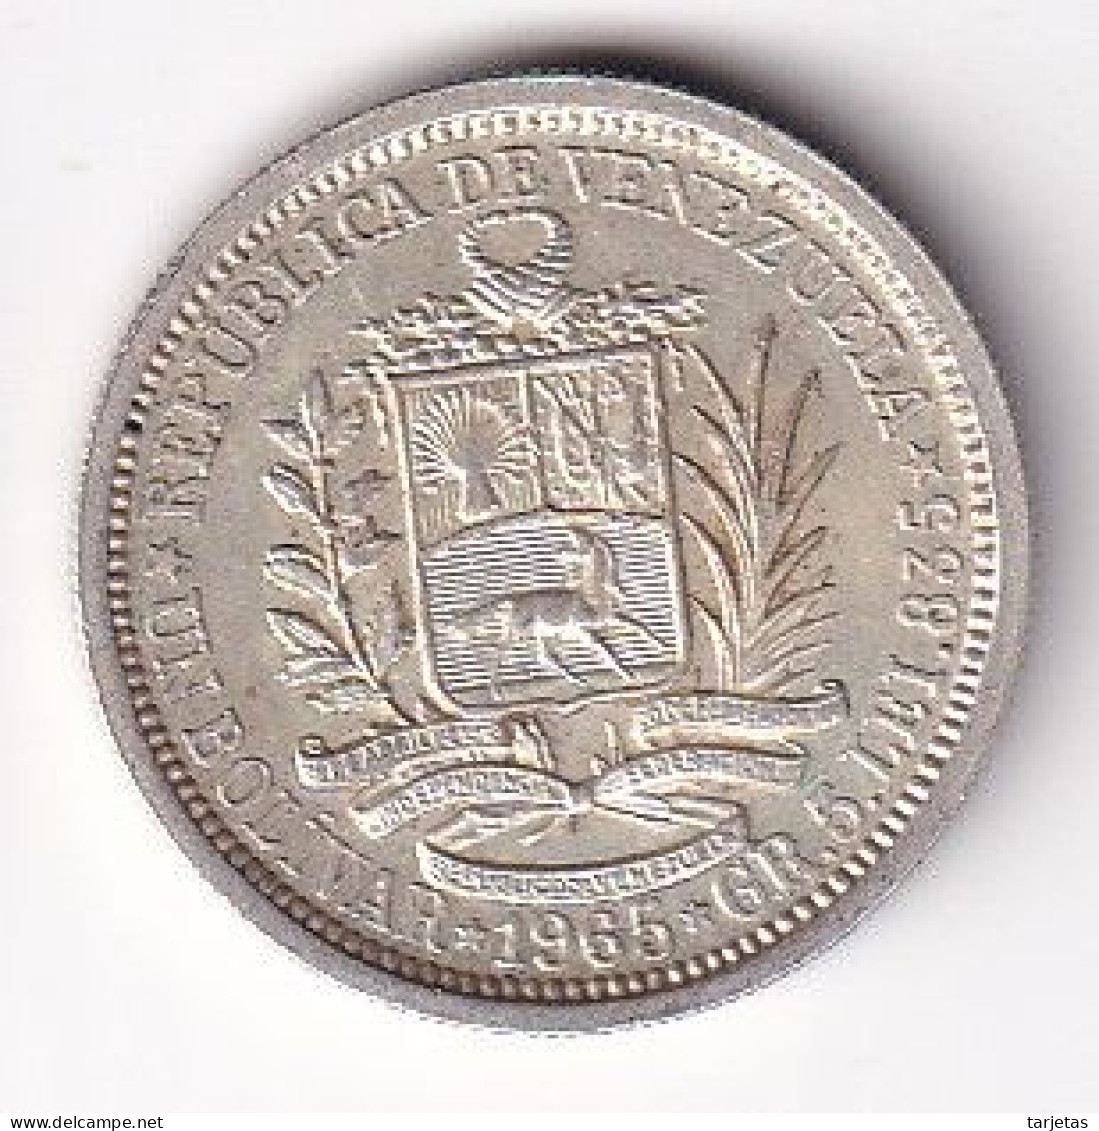 MONEDA DE PLATA DE VENEZUELA DE 1 BOLIVAR DEL AÑO 1965 (COIN) SILVER-ARGENT - Venezuela